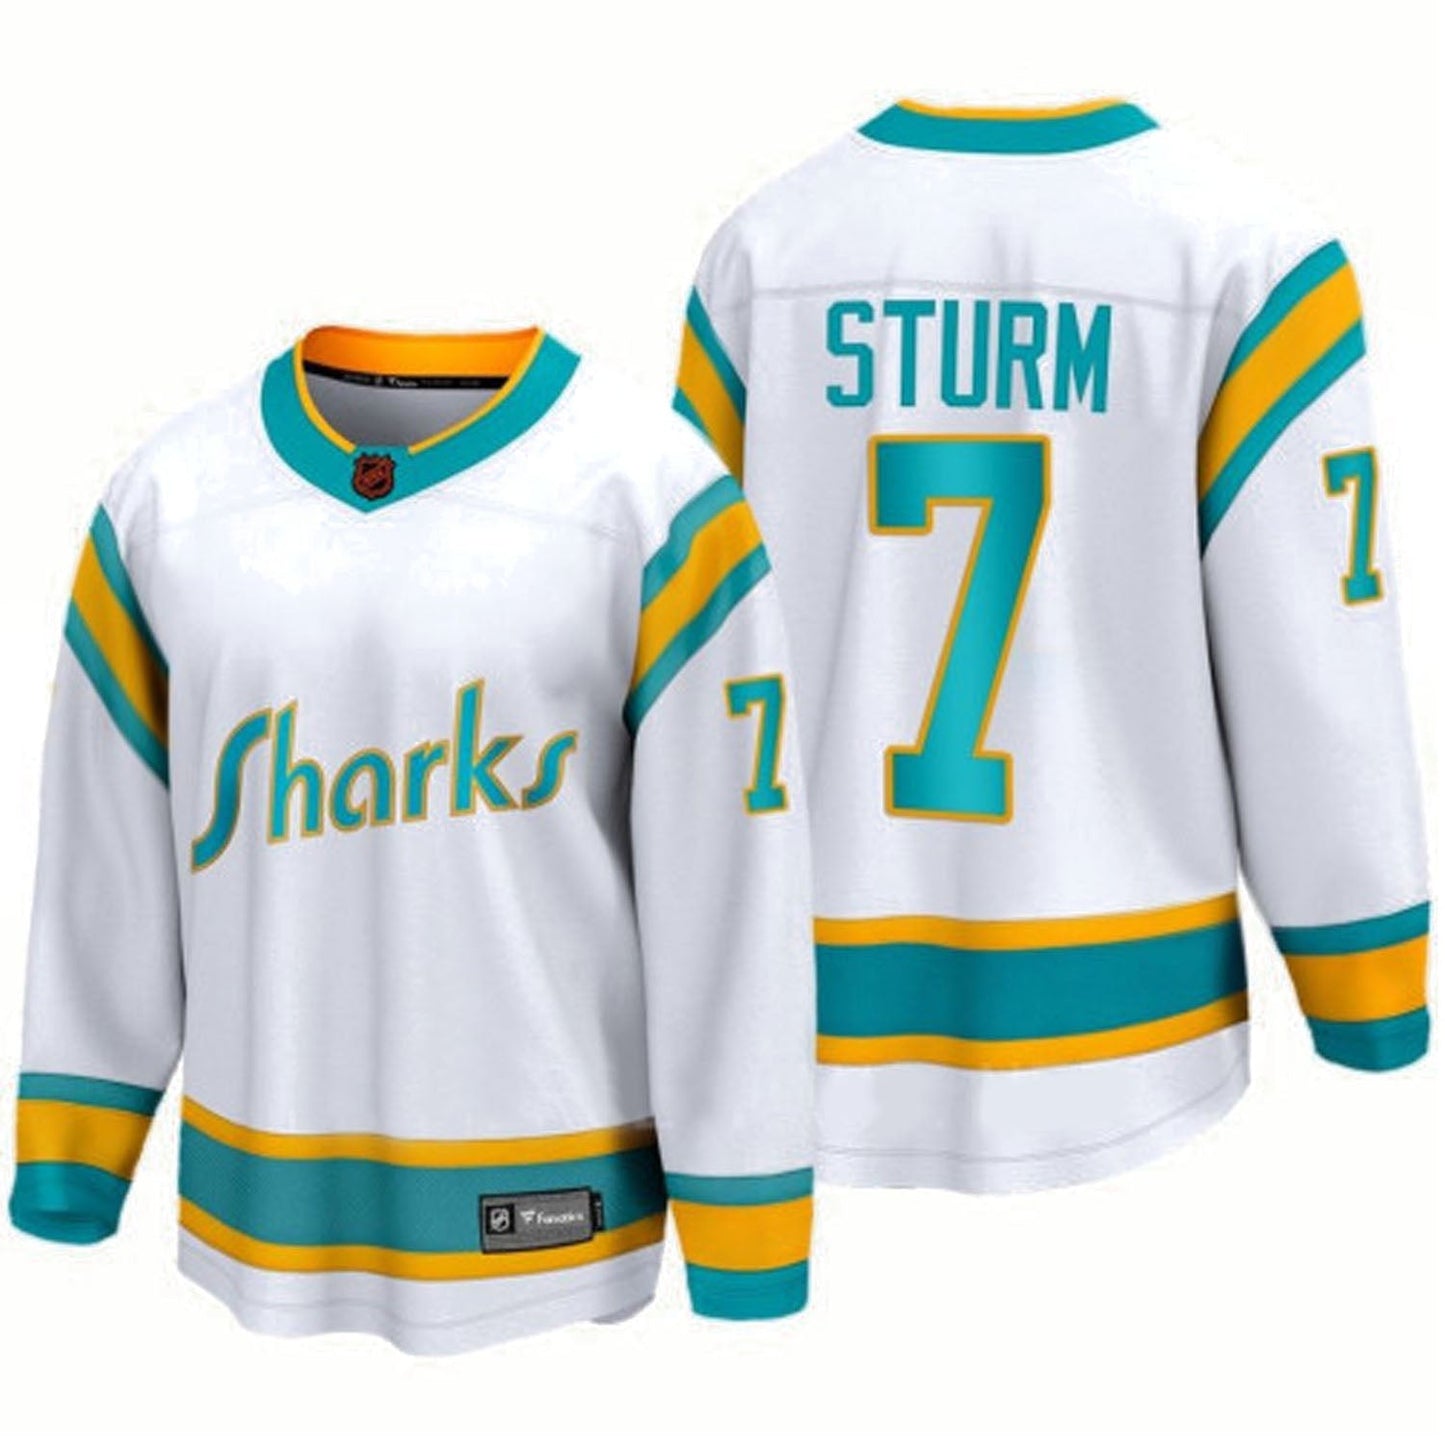 NHL Nico Sturm San Jose Sharks 7 Jersey